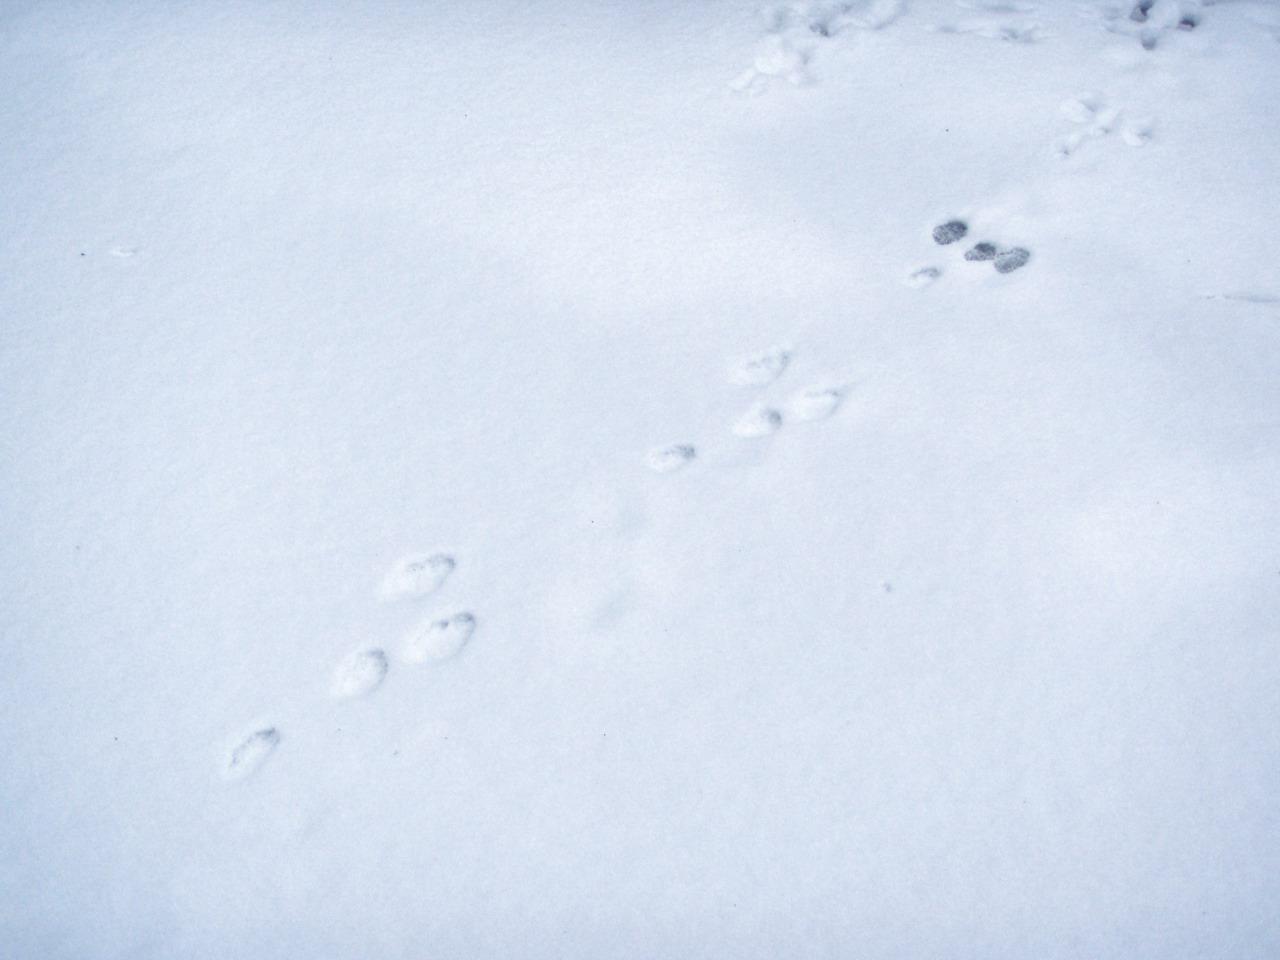 Заячьи и лисьи следы на снегу. Следы зайца беляка. Следы зайца беляка на снегу. Следы зайца русака на снегу. Следы зайца русака.